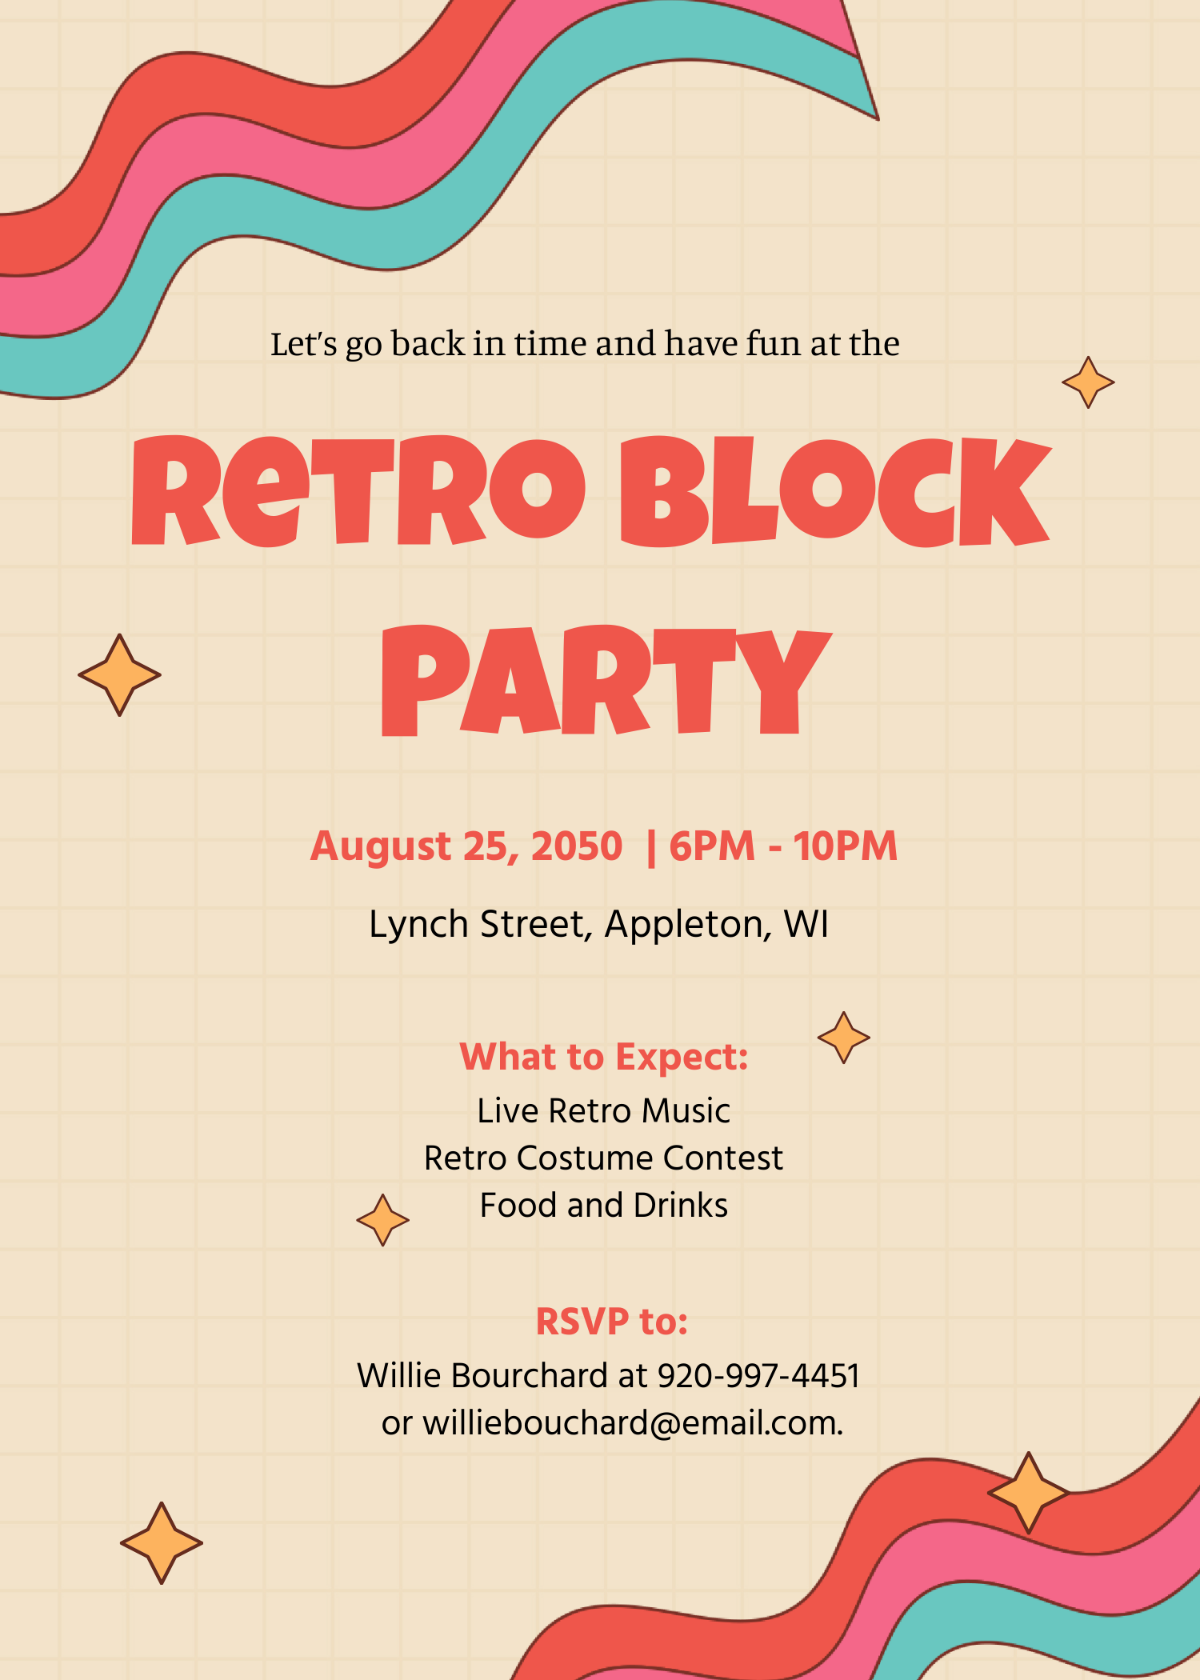 Retro Block Party Invitation